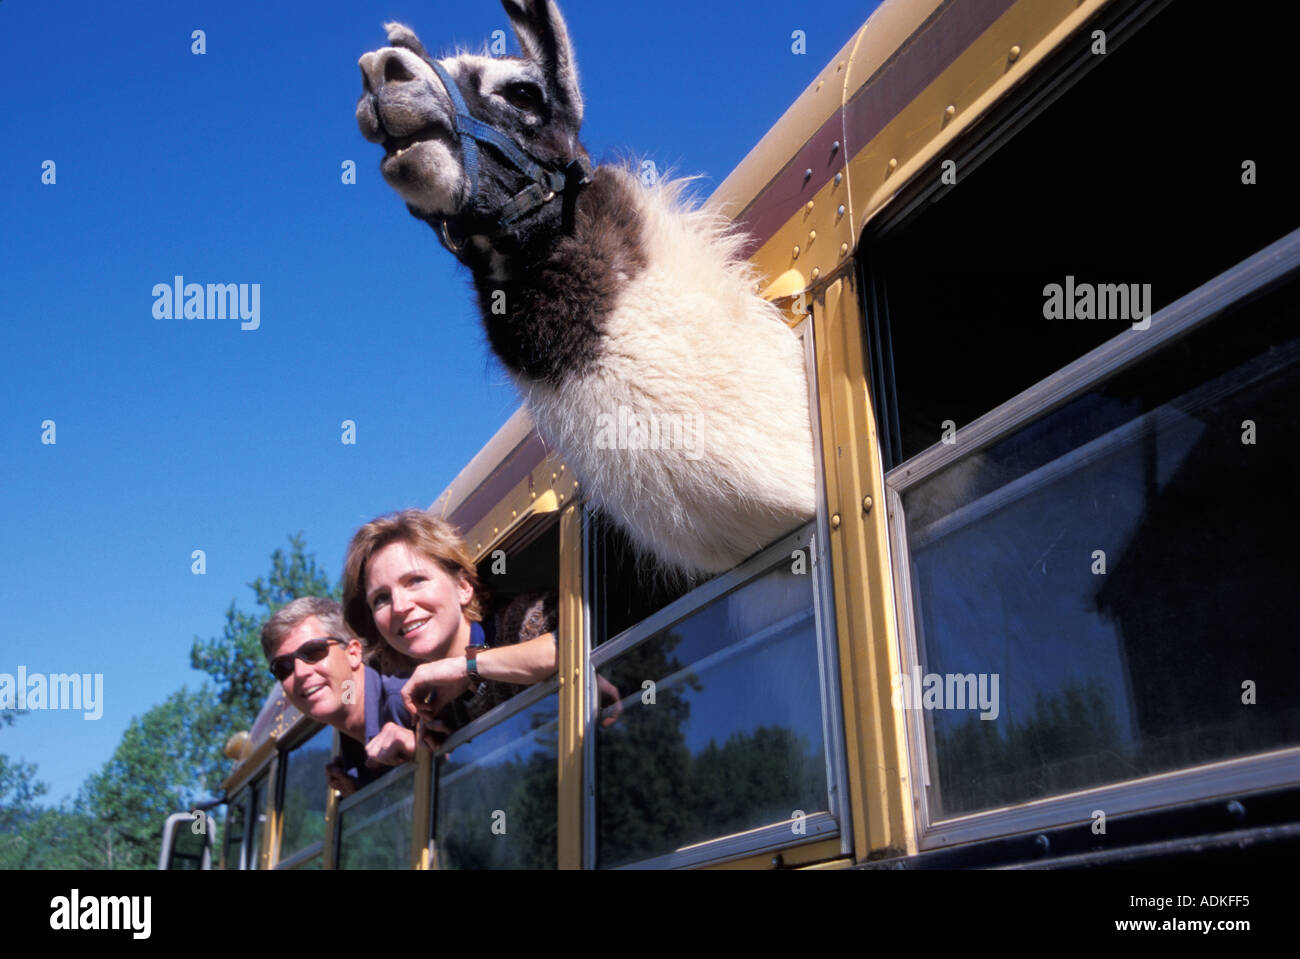 Llama coller sa tête hors de la fenêtre d'un Schoolbus Banque D'Images